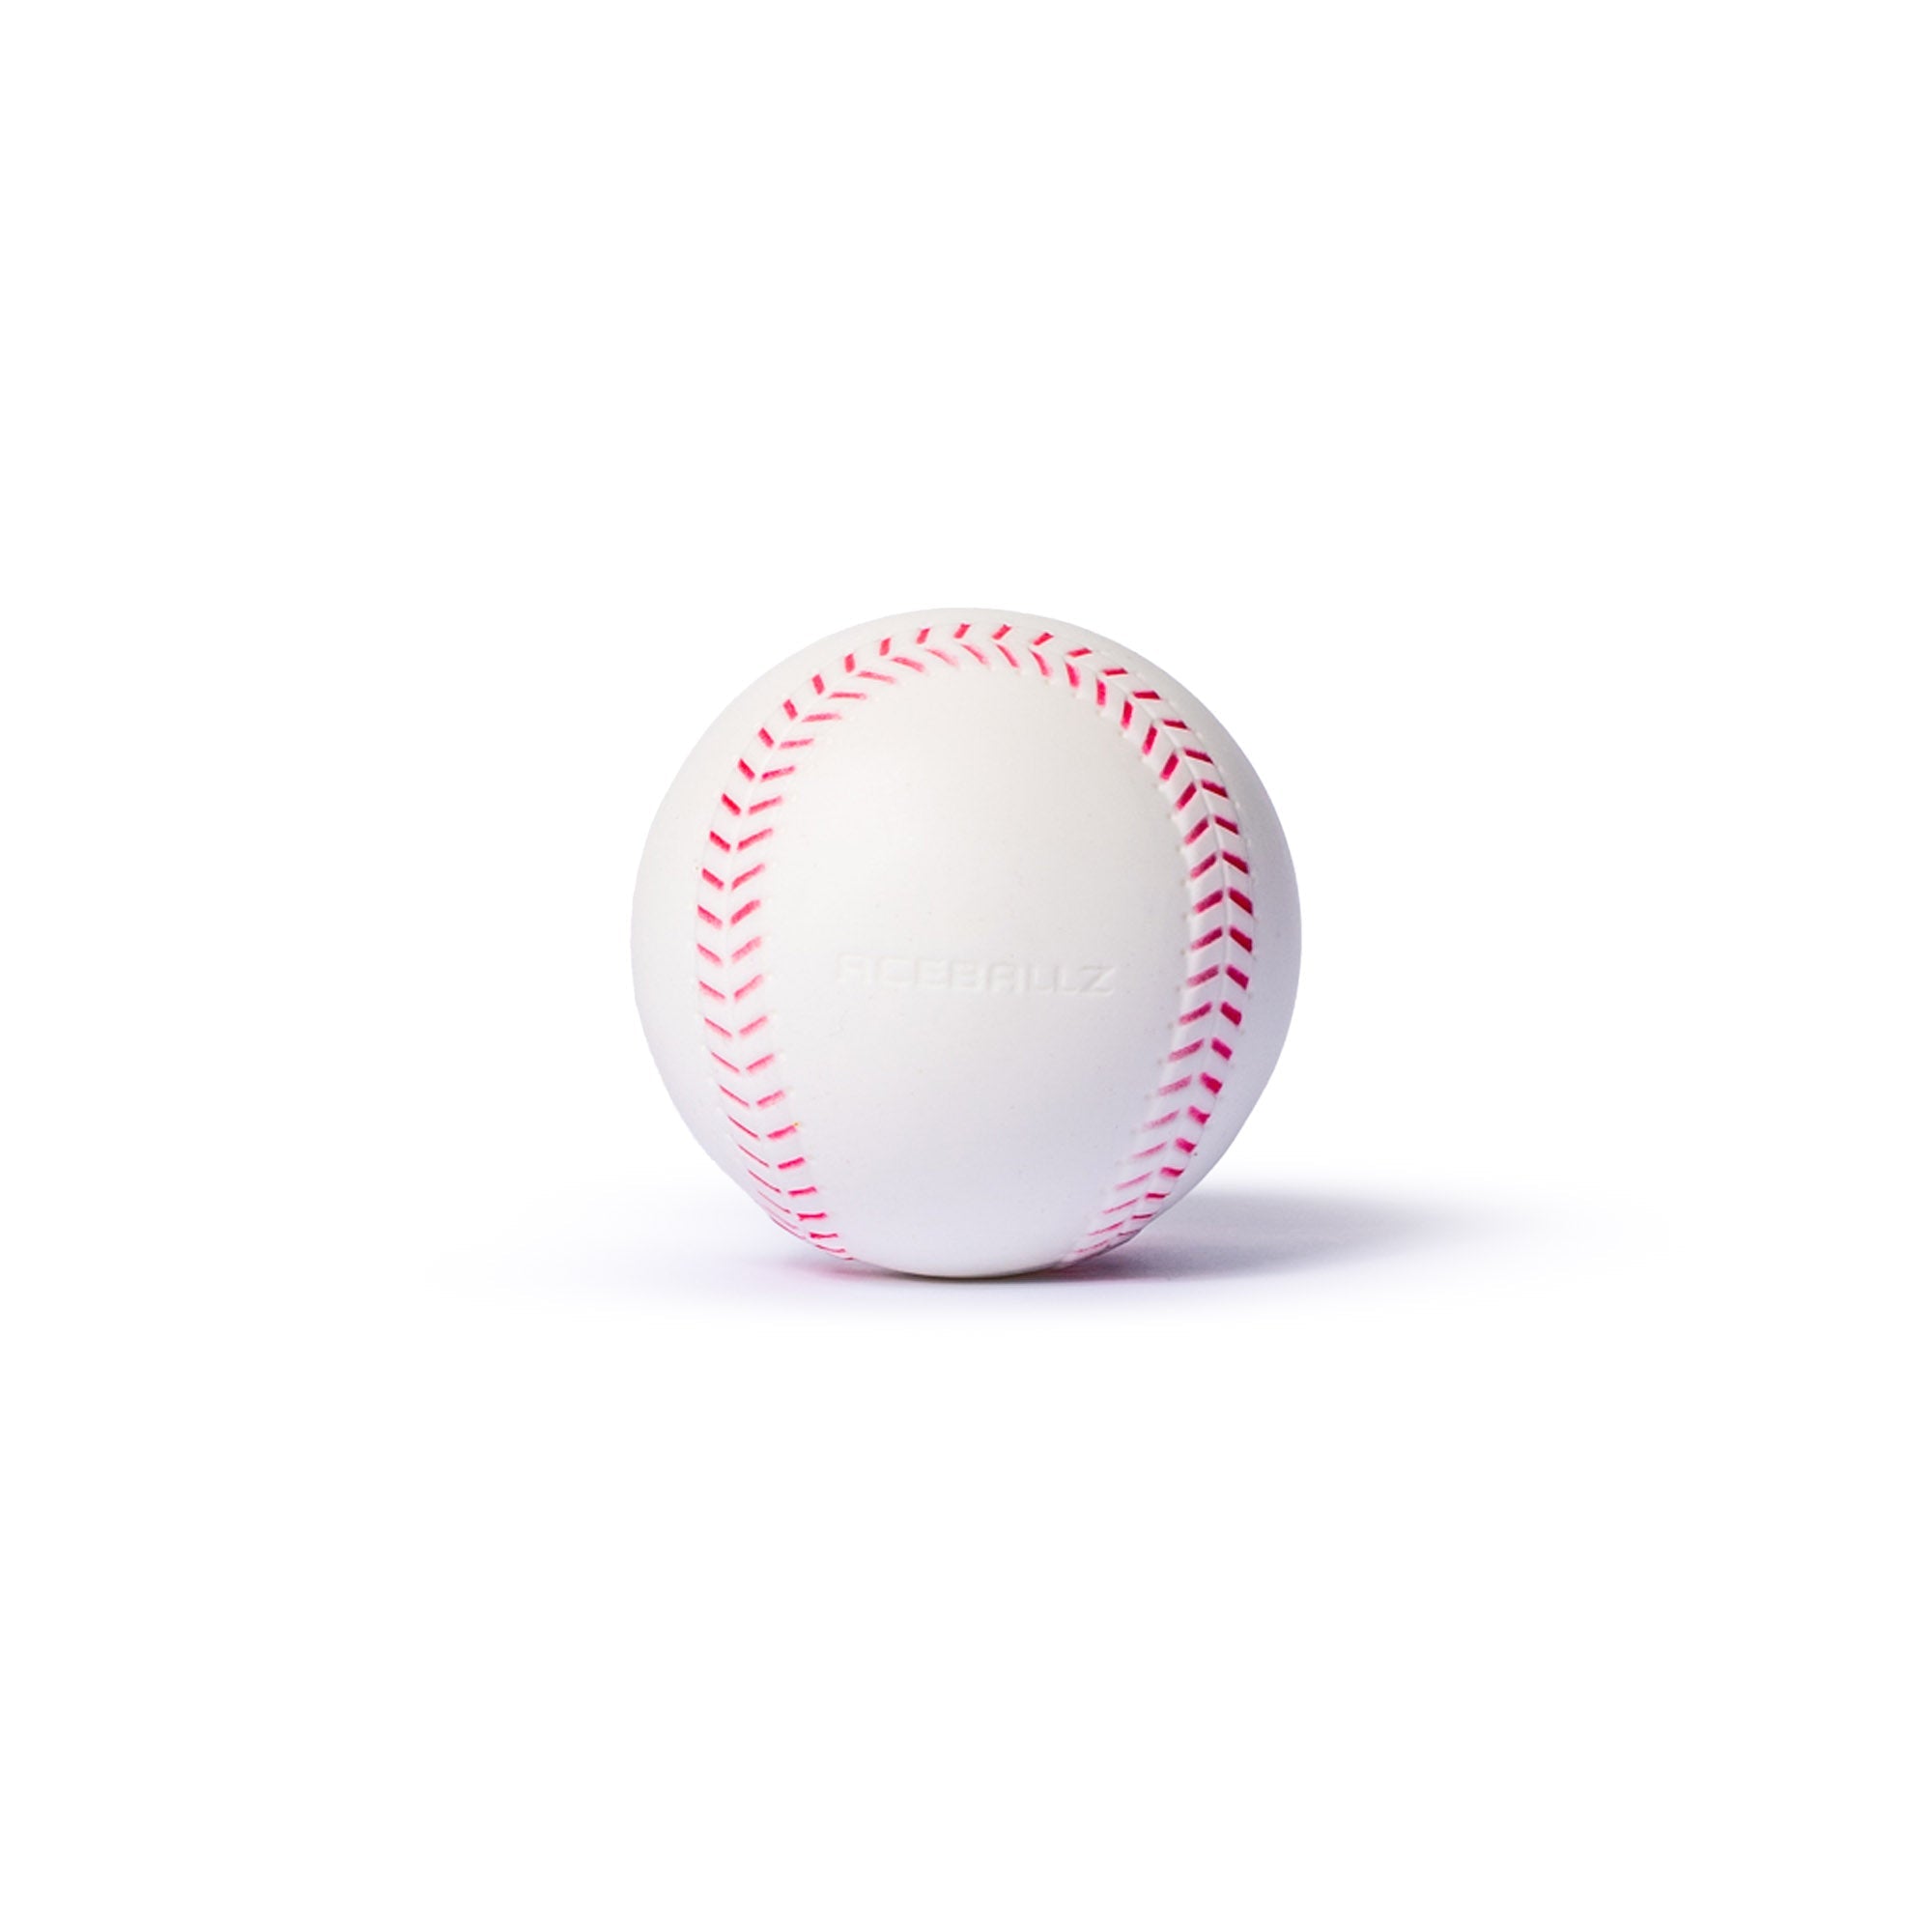 Smushballs Machine Balls - Maximum Velocity Sports